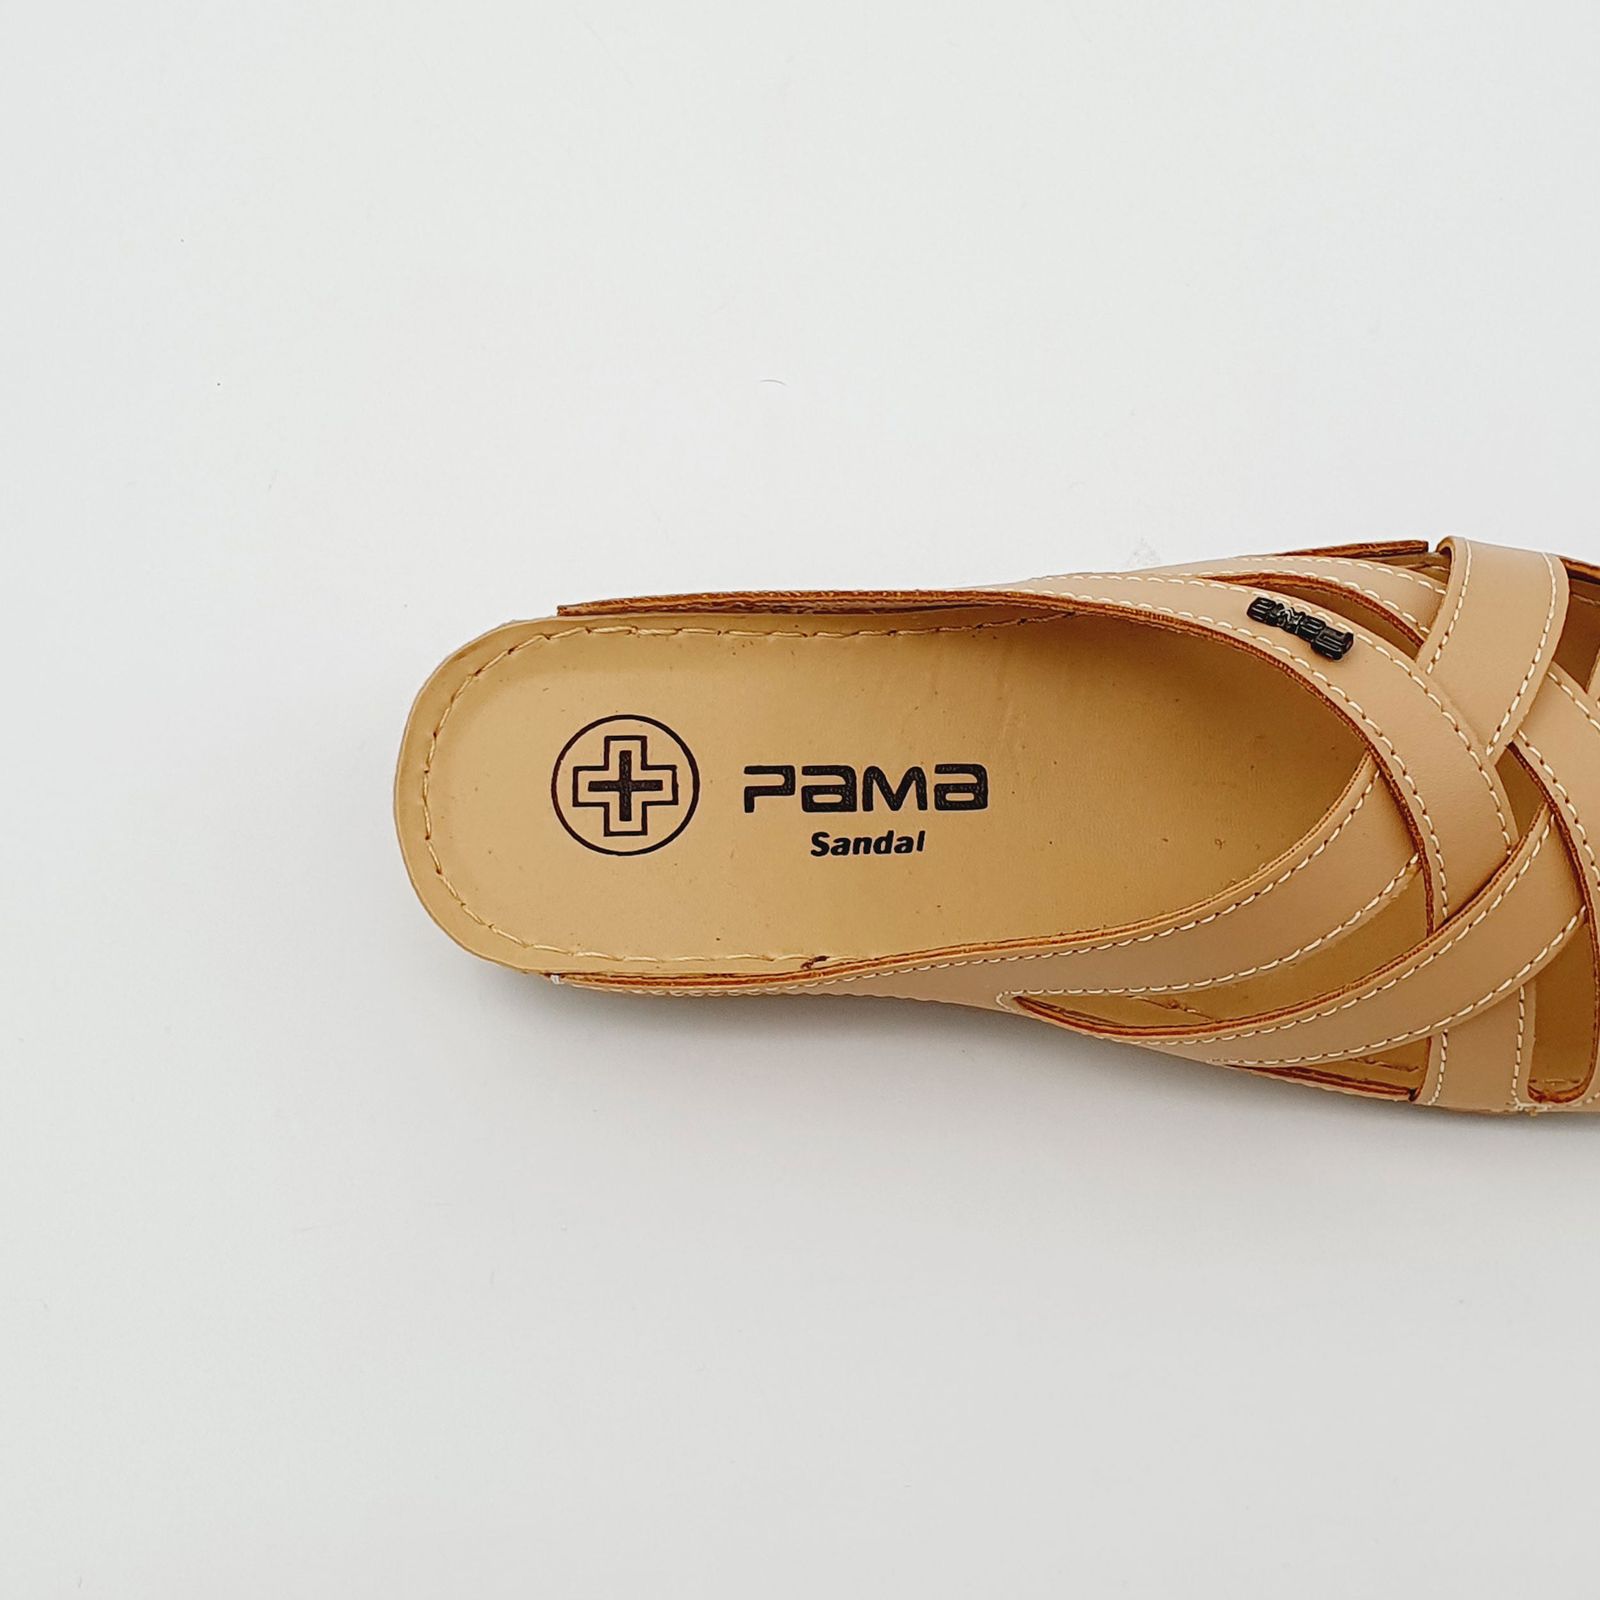 دمپایی زنانه پاما مدل الیکا کد G1685 -  - 7